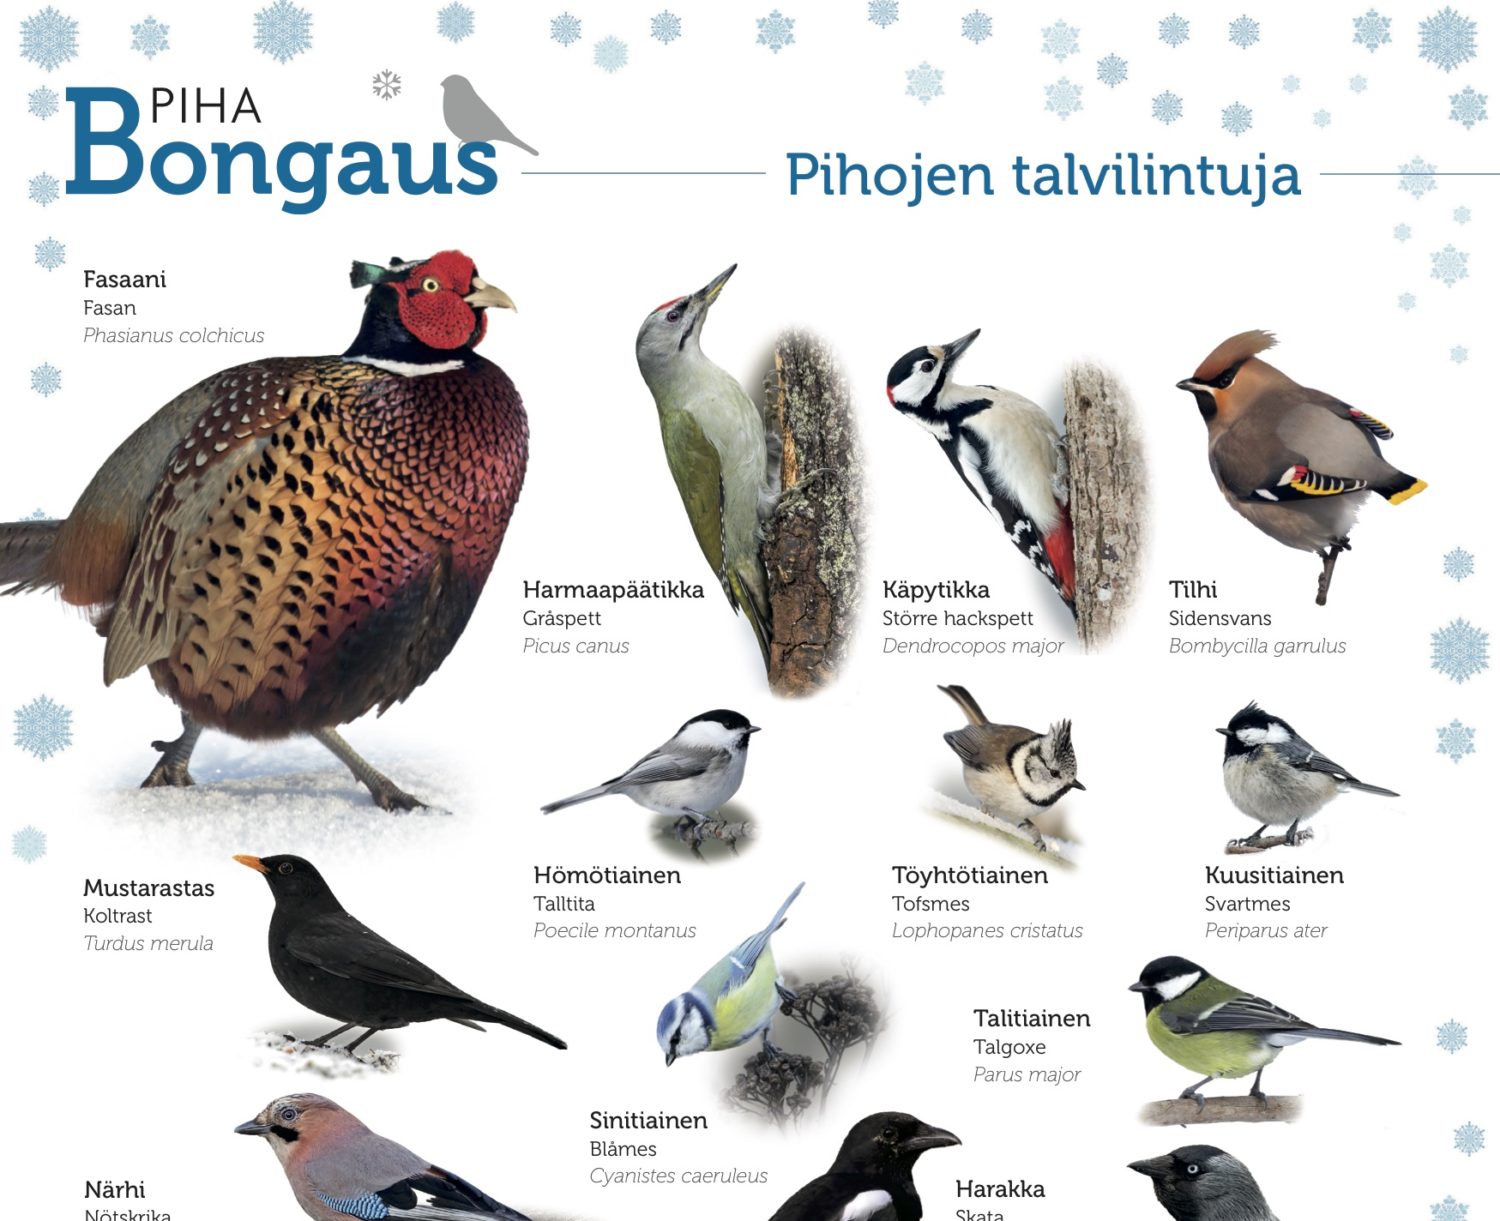 On jälleen Pihabongauksen aika – siinä oma piha kertoo linnuston muutoksesta